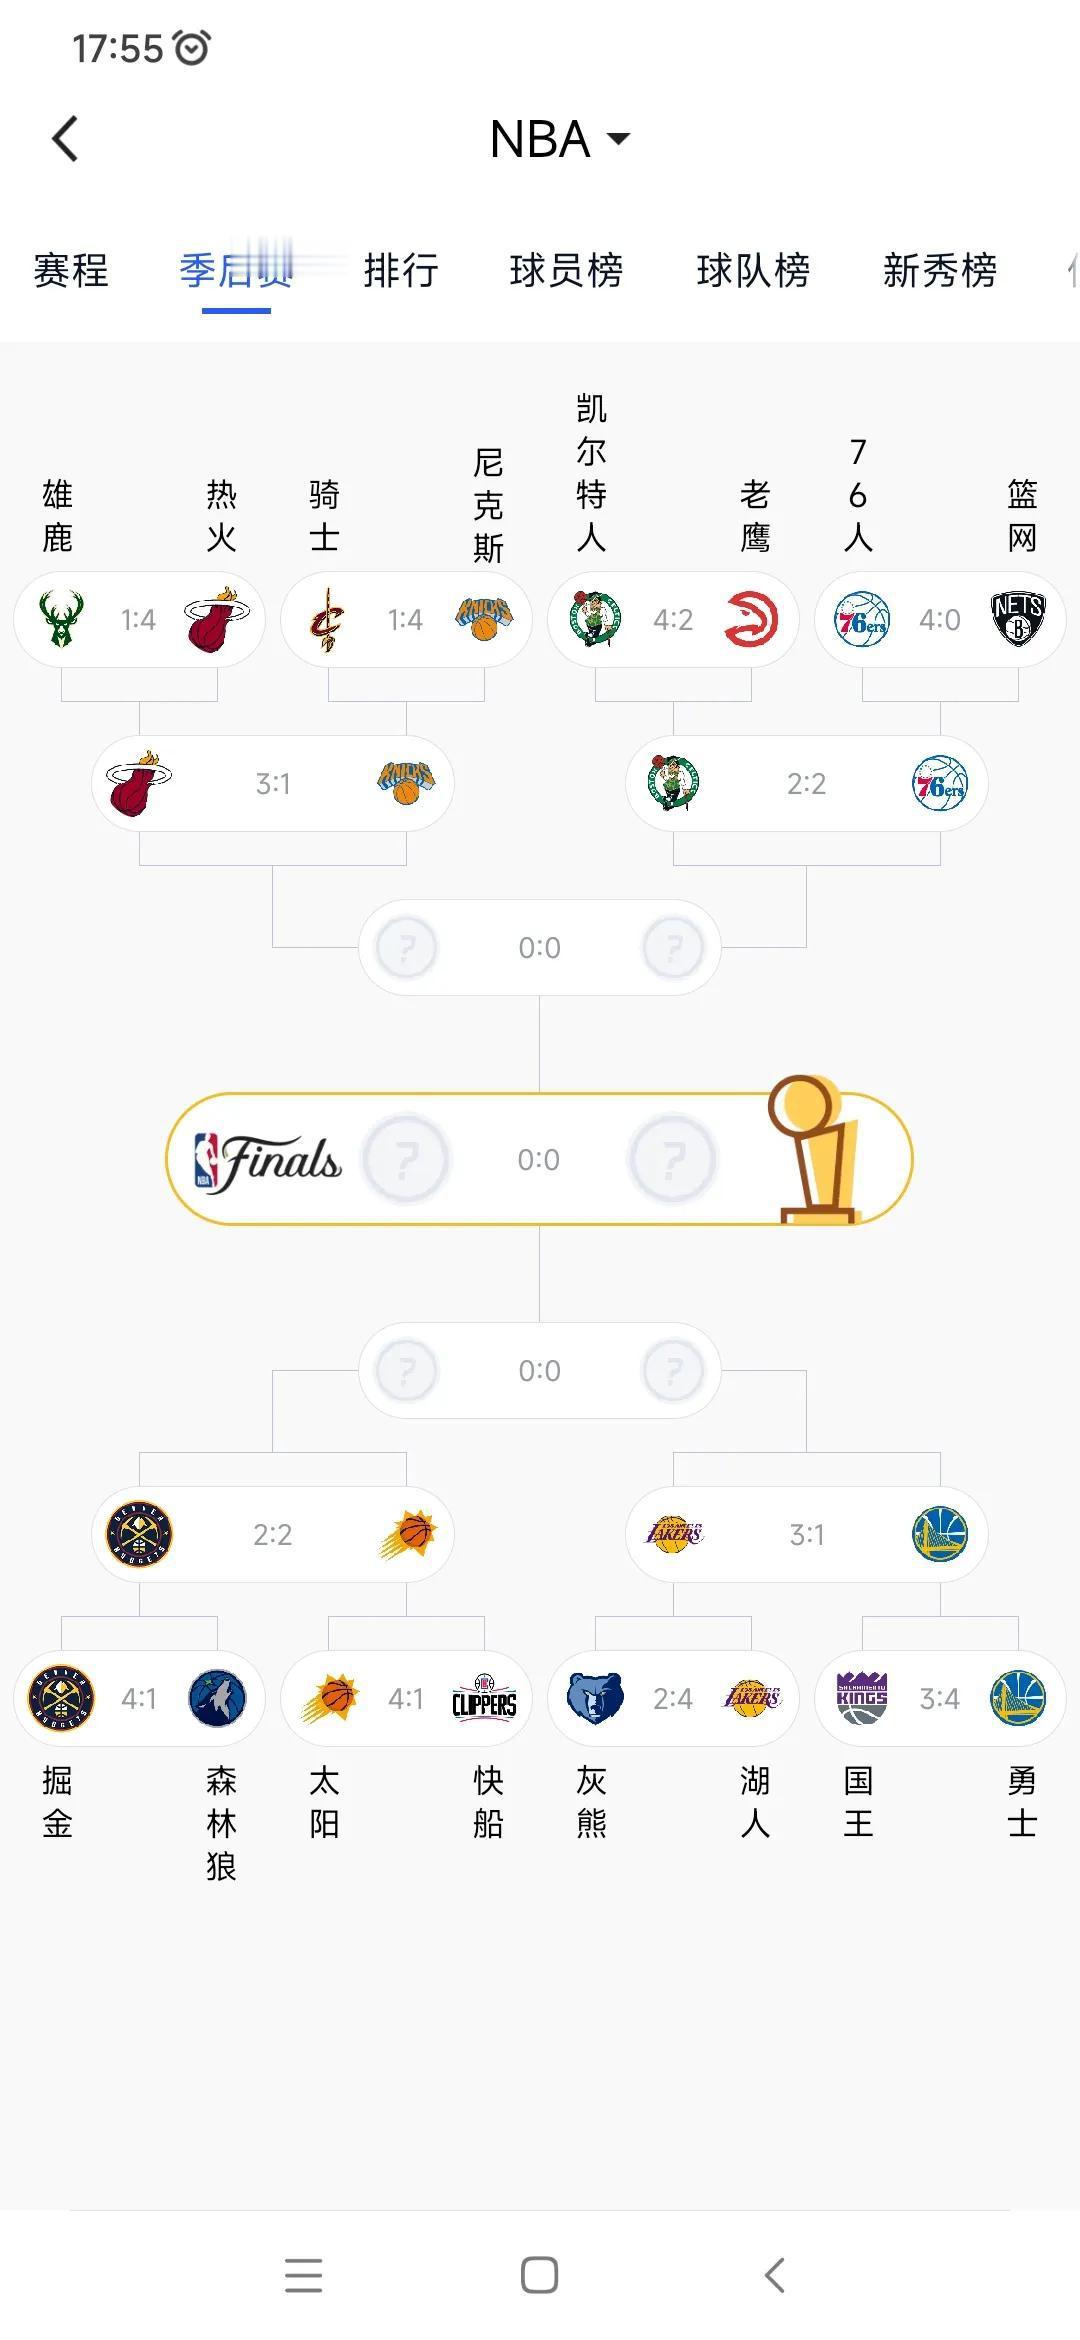 今年NBA的主题以弱胜强，最终弱队夺冠？

东部第八热火3比1领先。

西部第七(1)